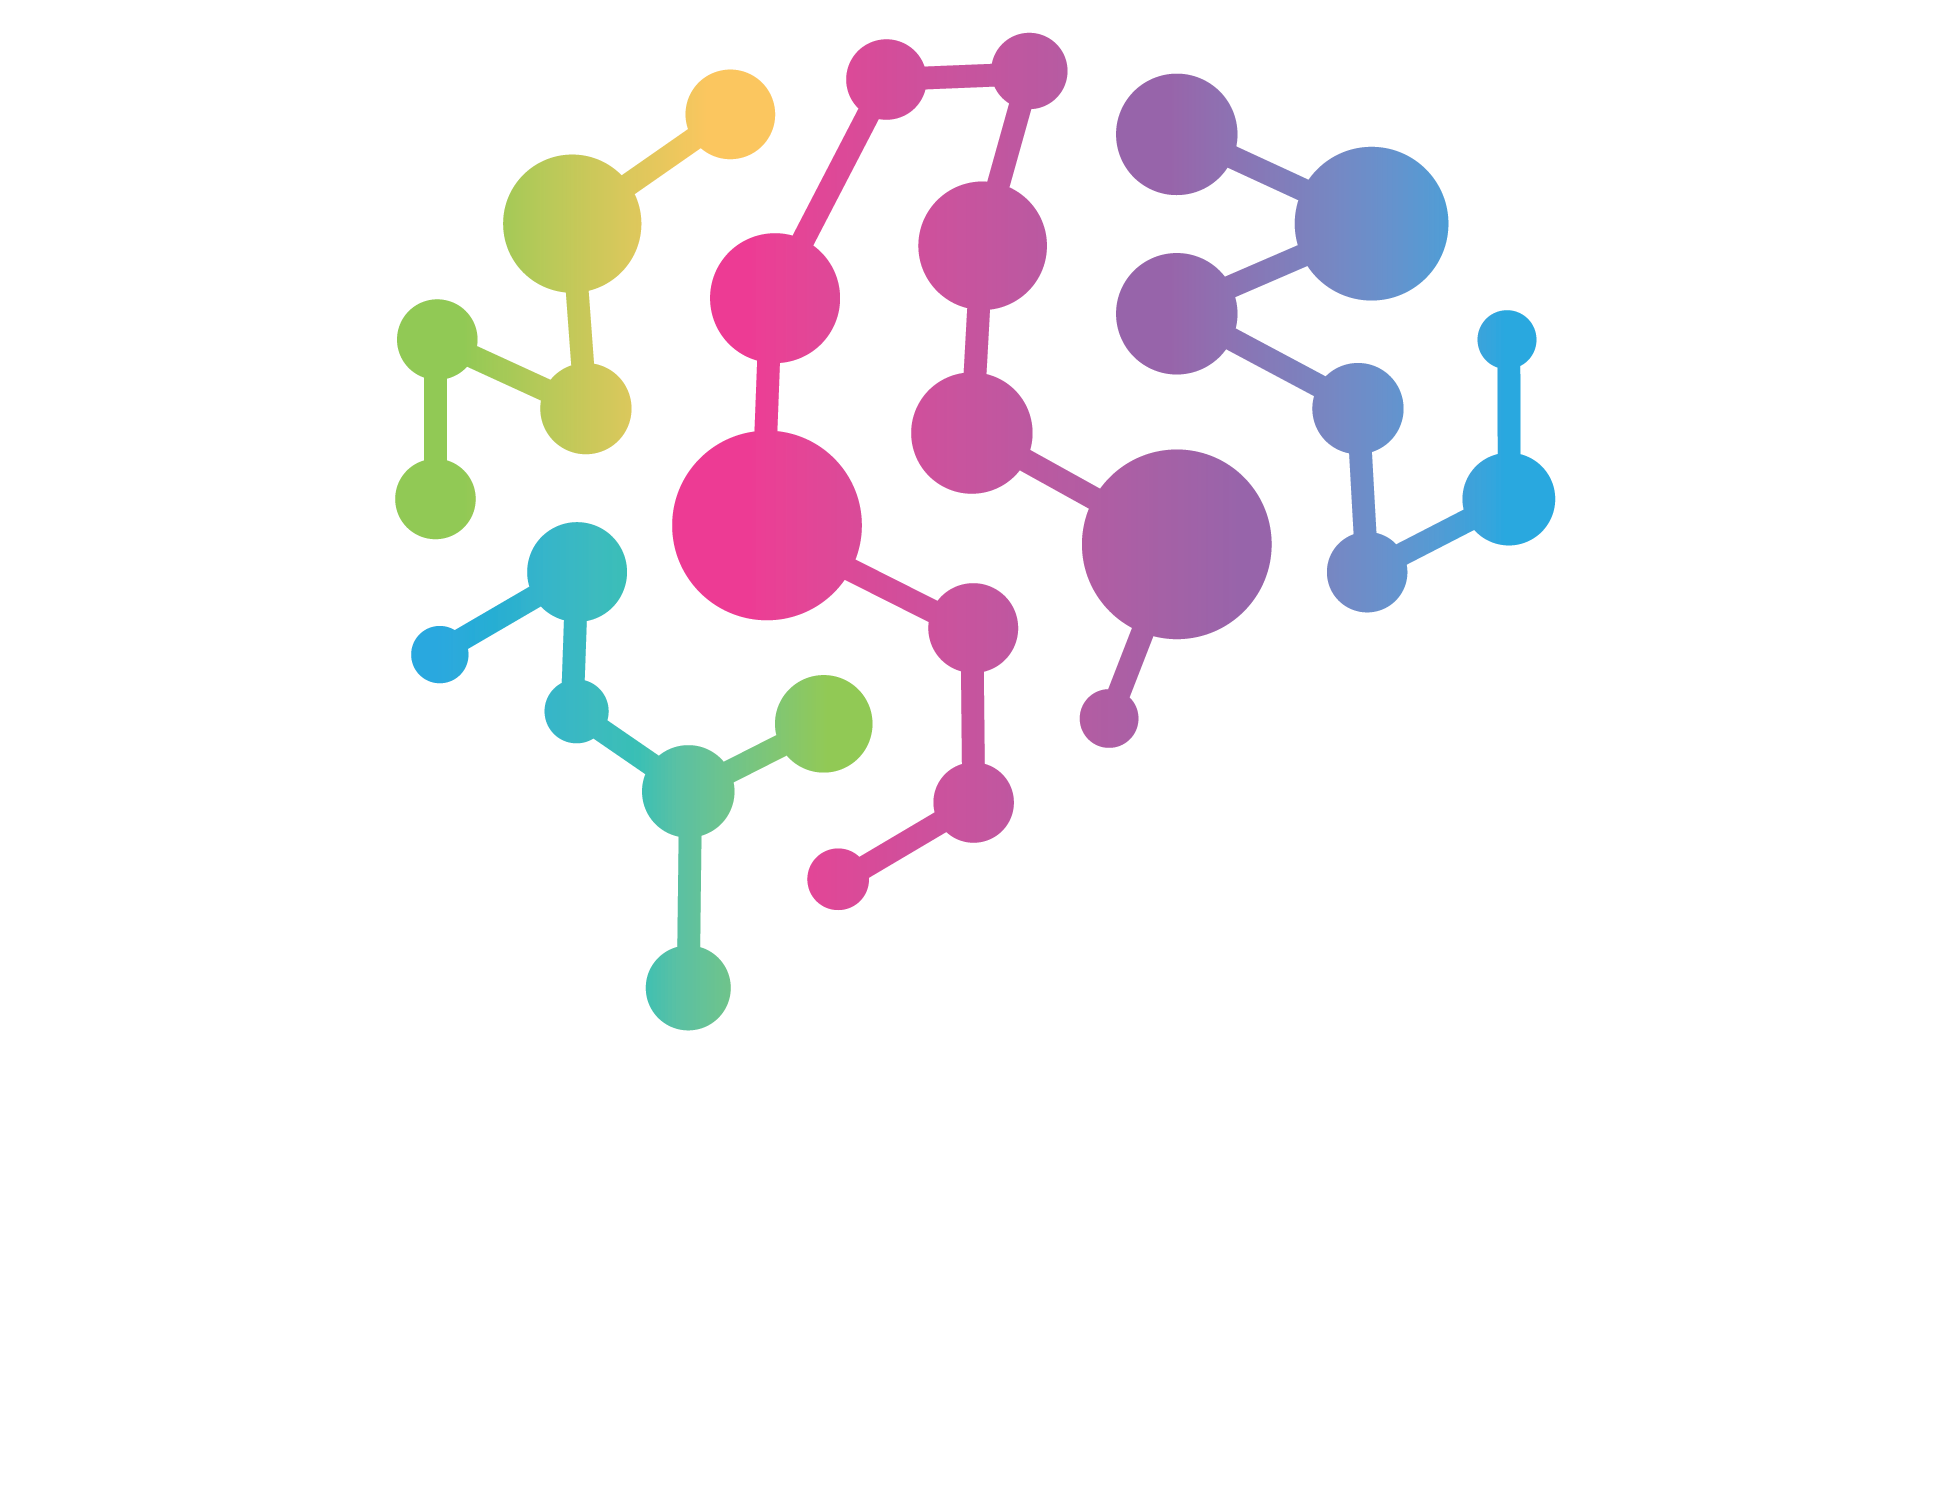 Gluware.ai logo